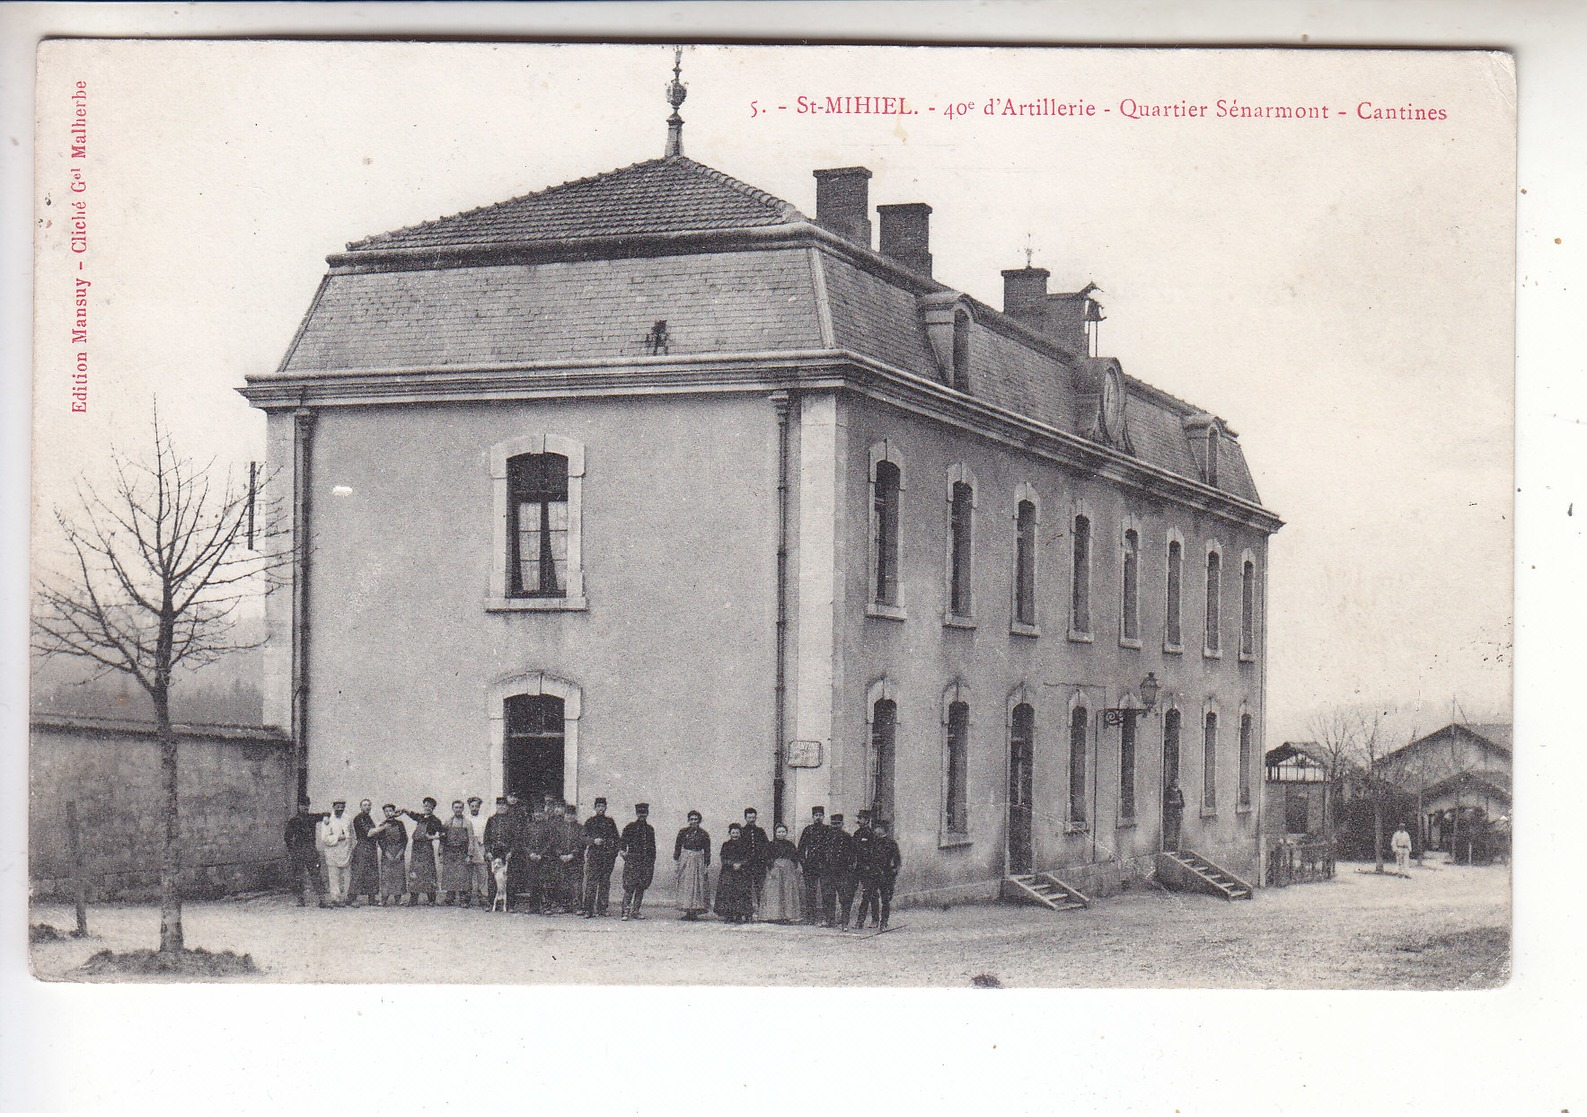 Ps- 55 - SAINT MIHIEL - 40 D'artillerie - Quartier Senarmont - Cantines - Timbre - Cachet - 1907 - Saint Mihiel